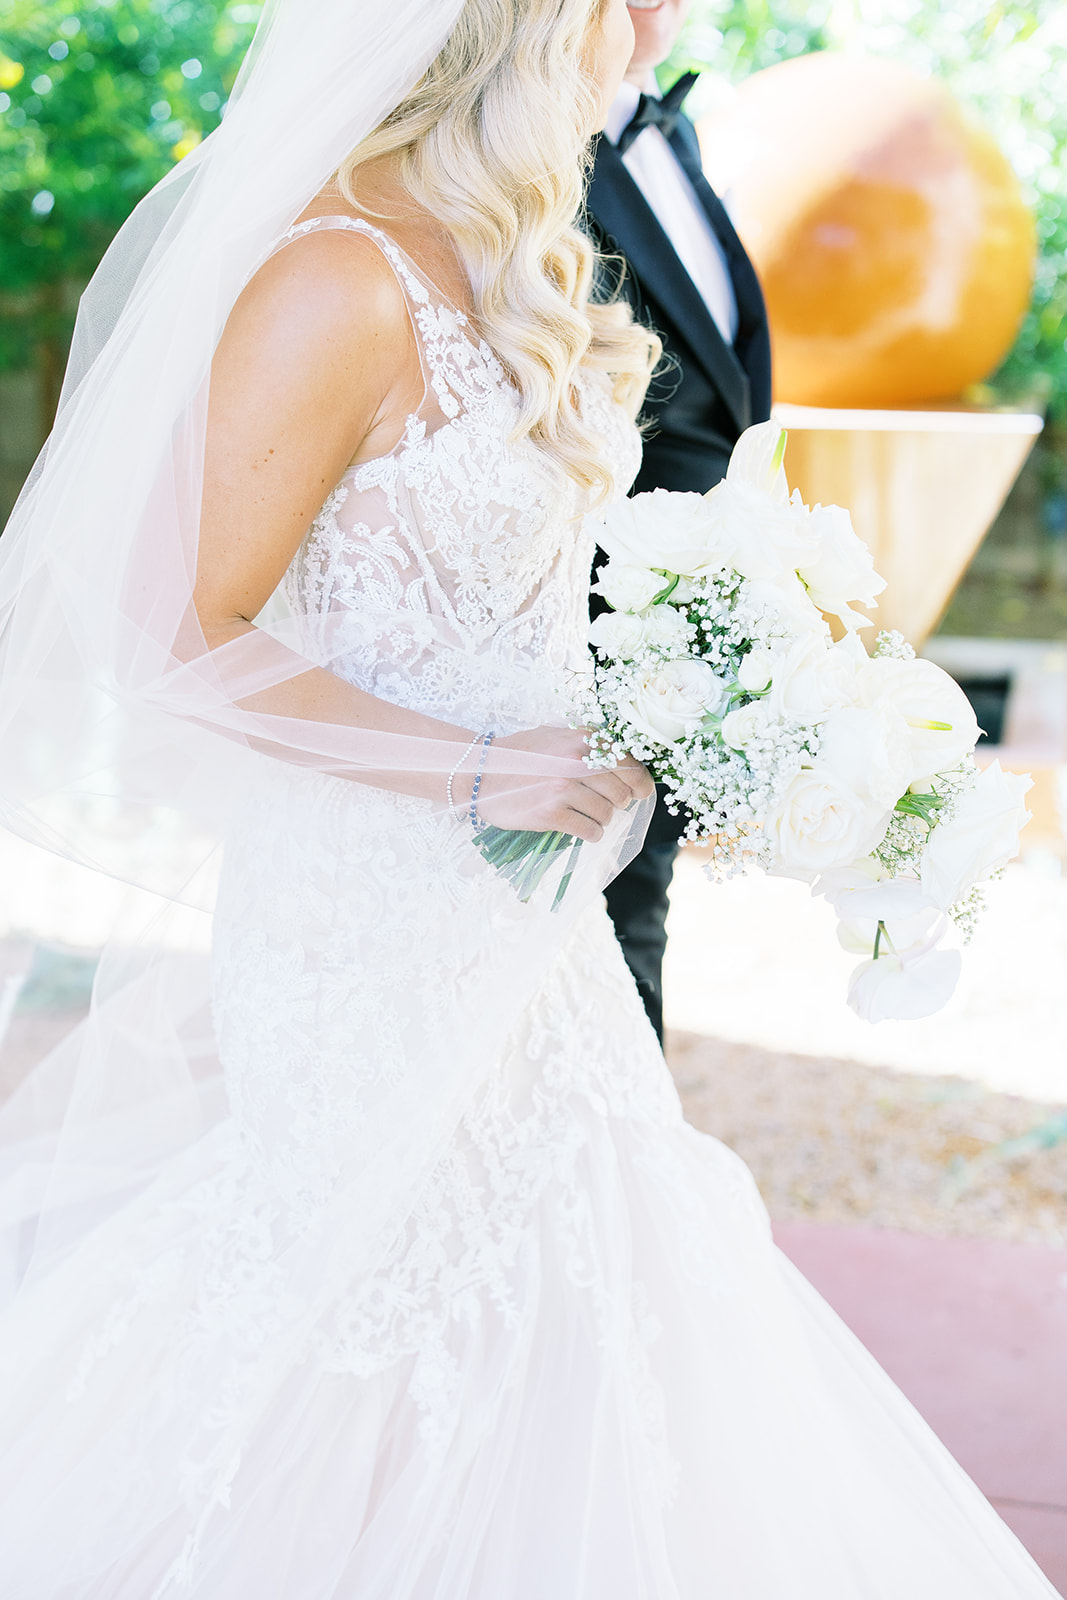 Bride holding white floral bouquet.